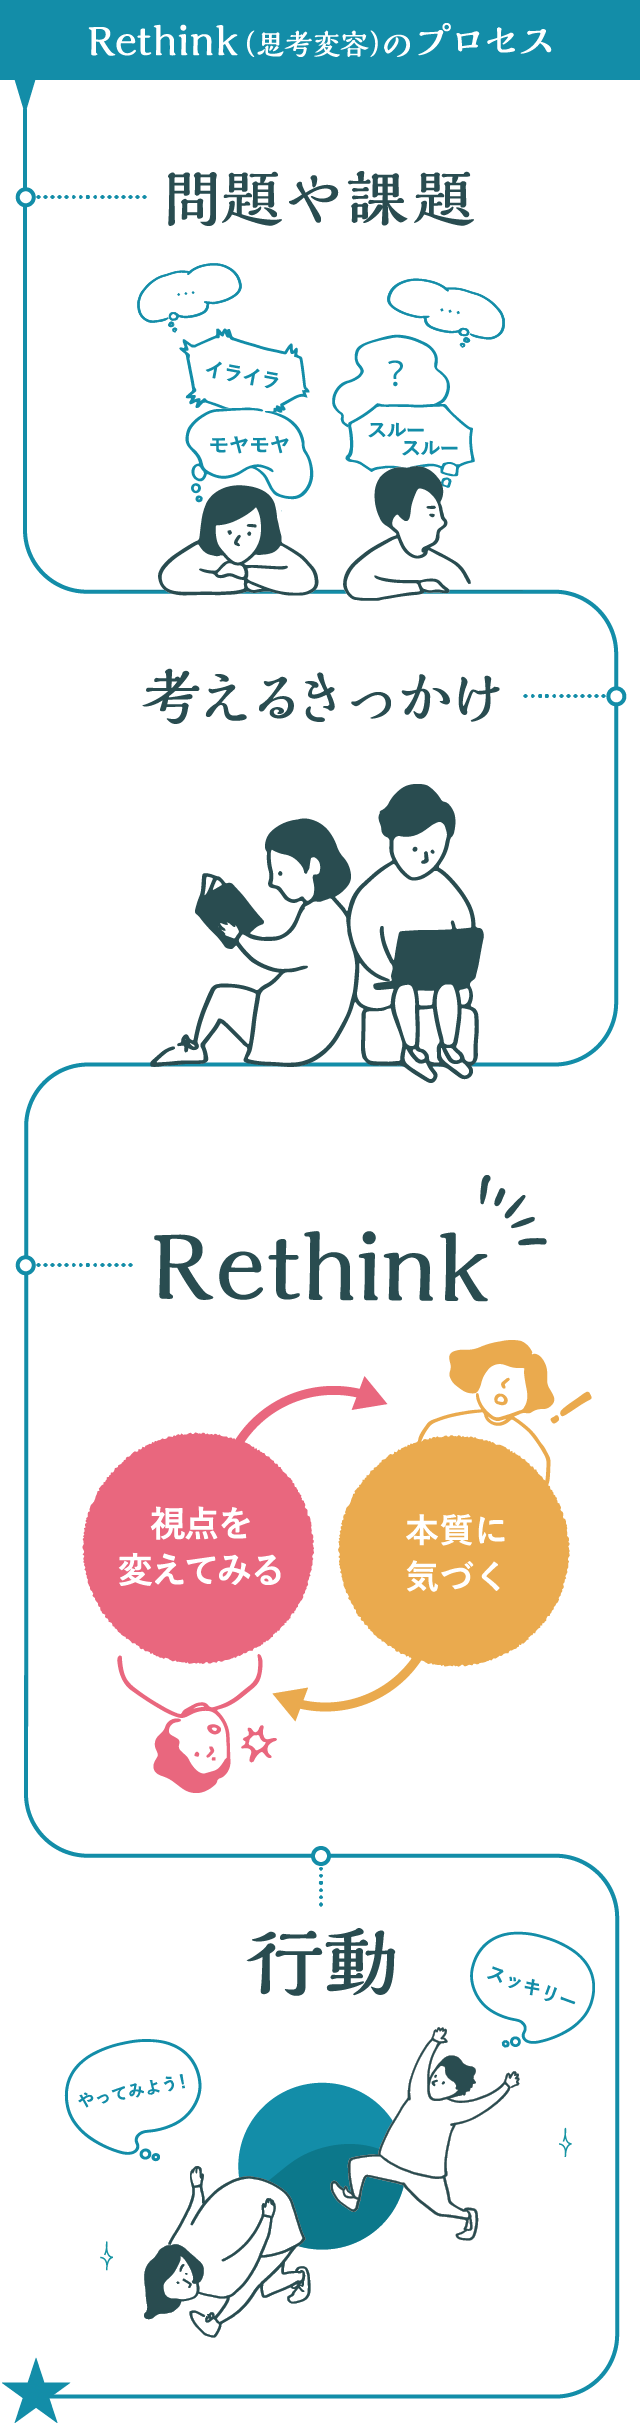 Rethinkとは!? Rethink(思考変容)のプロセス